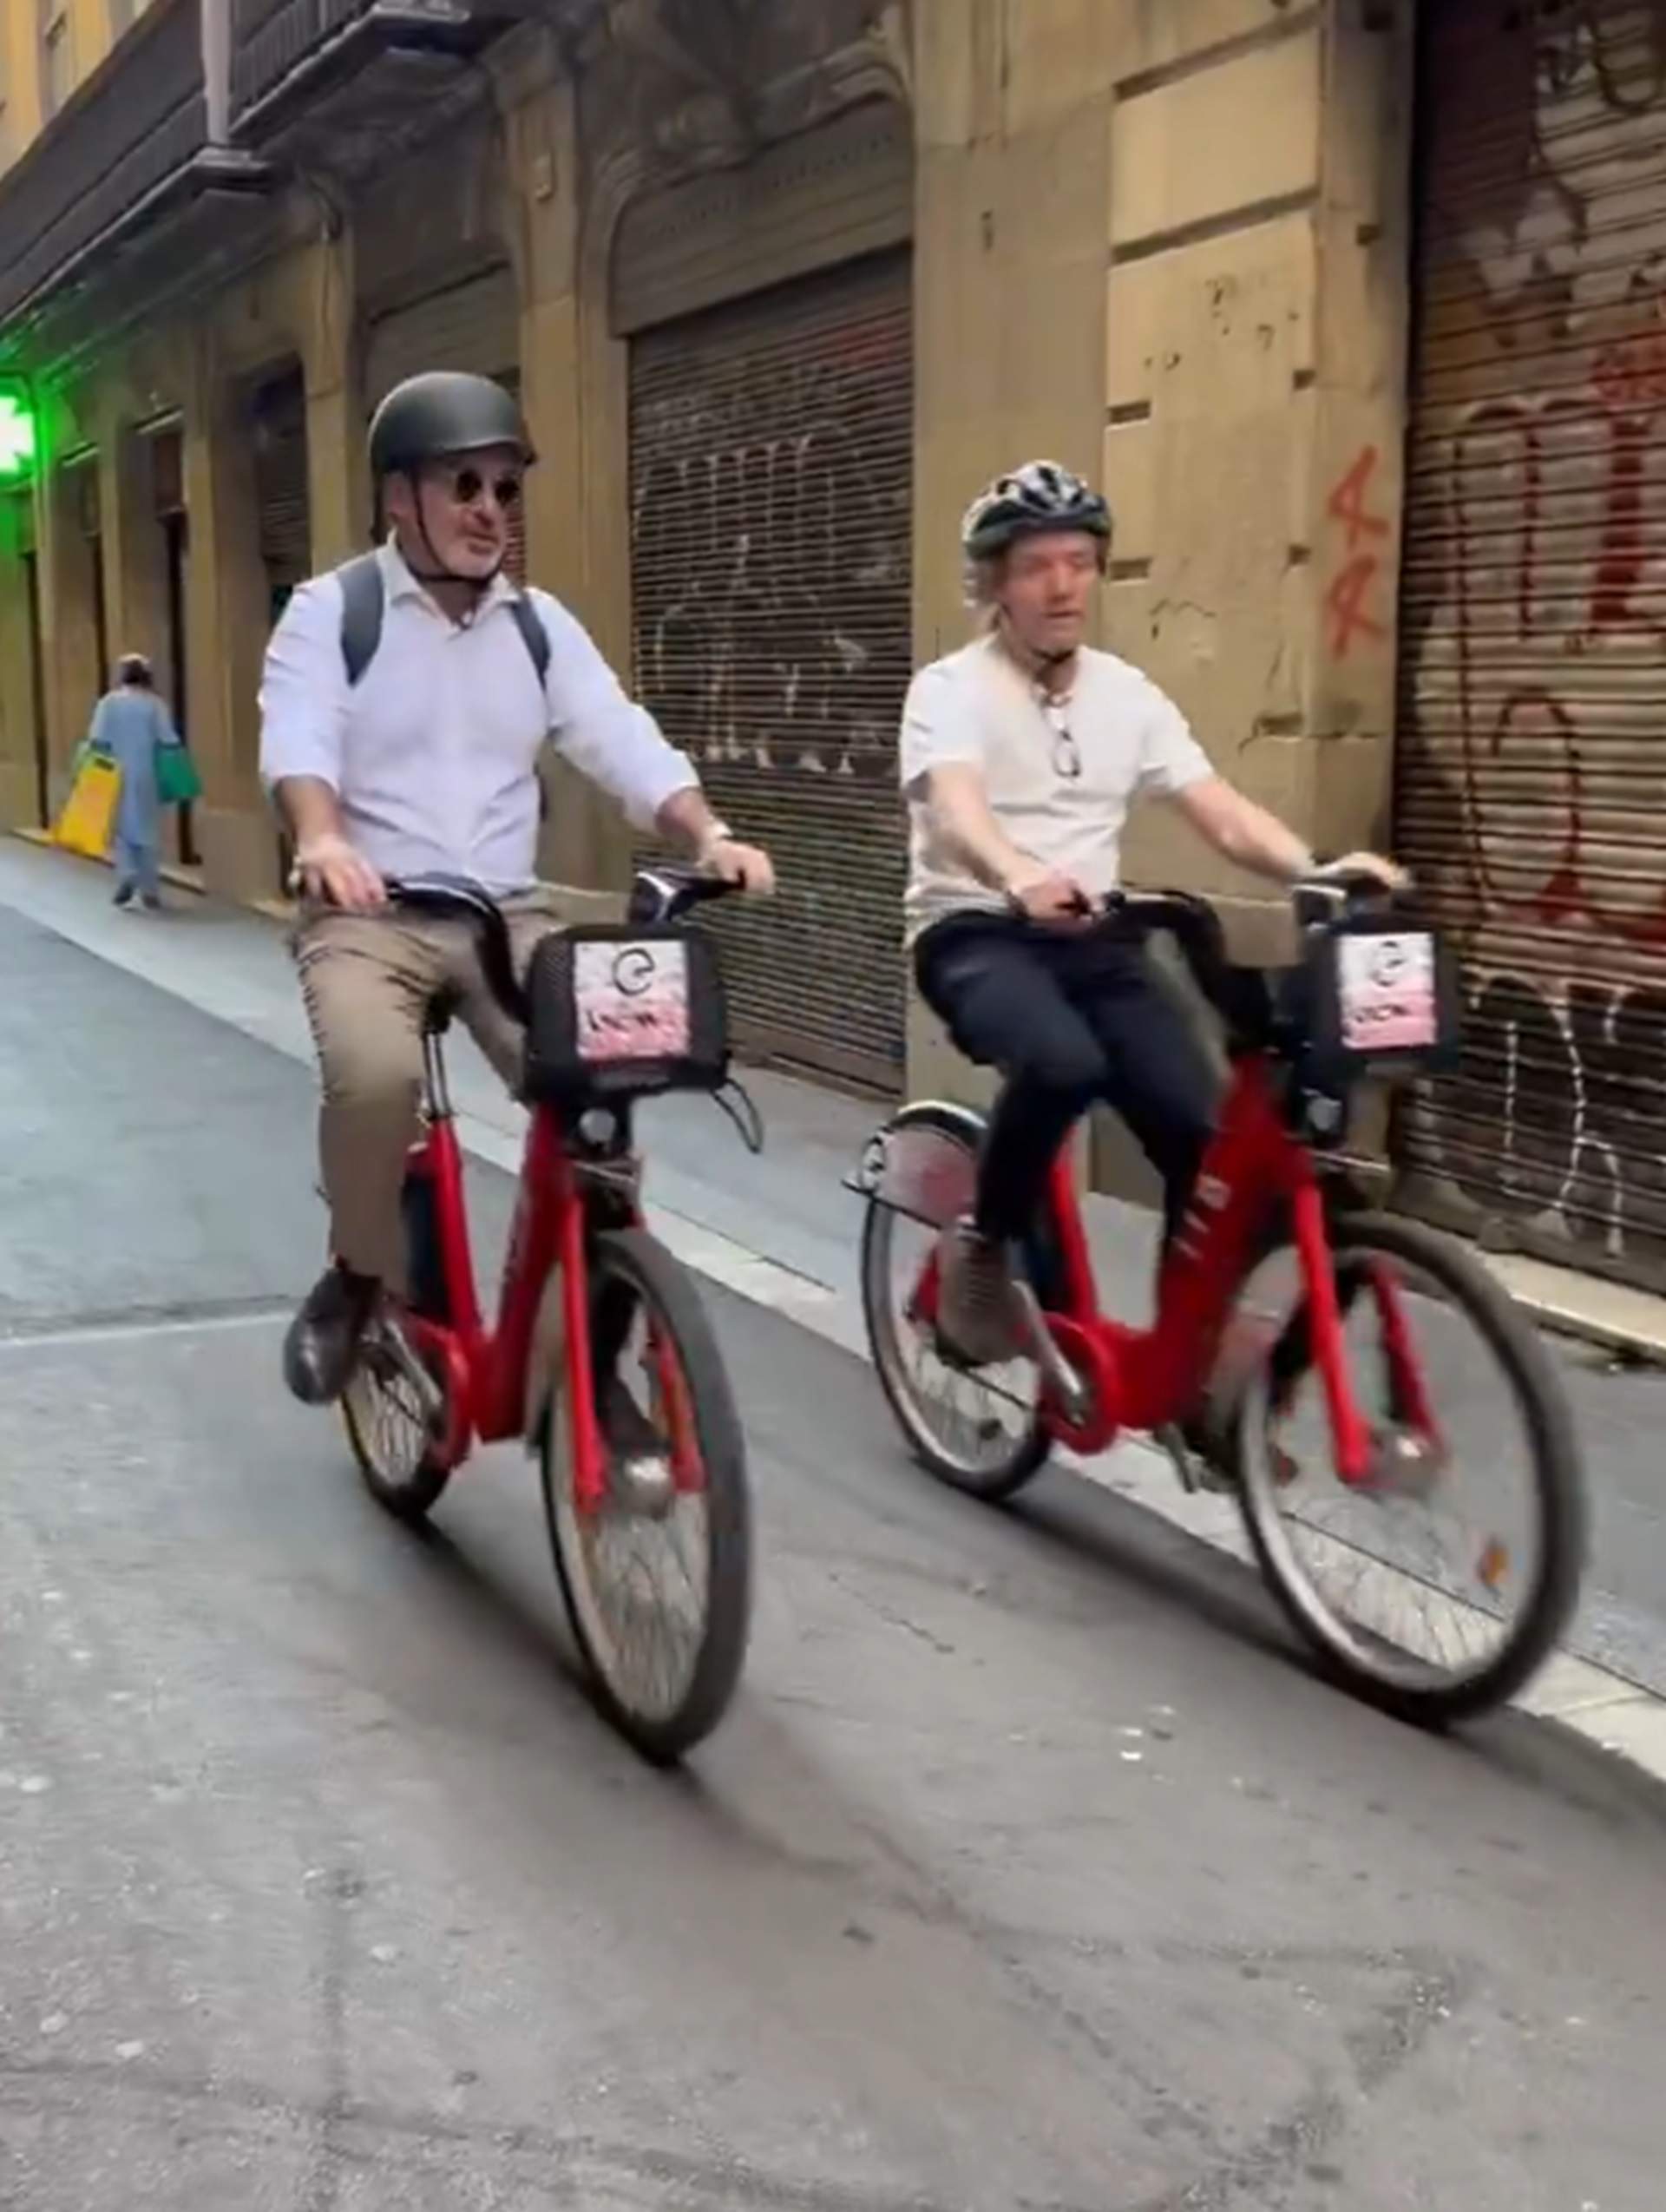 Jaume Collboni admet la infracció amb la bicicleta i paga una multa de 100 euros